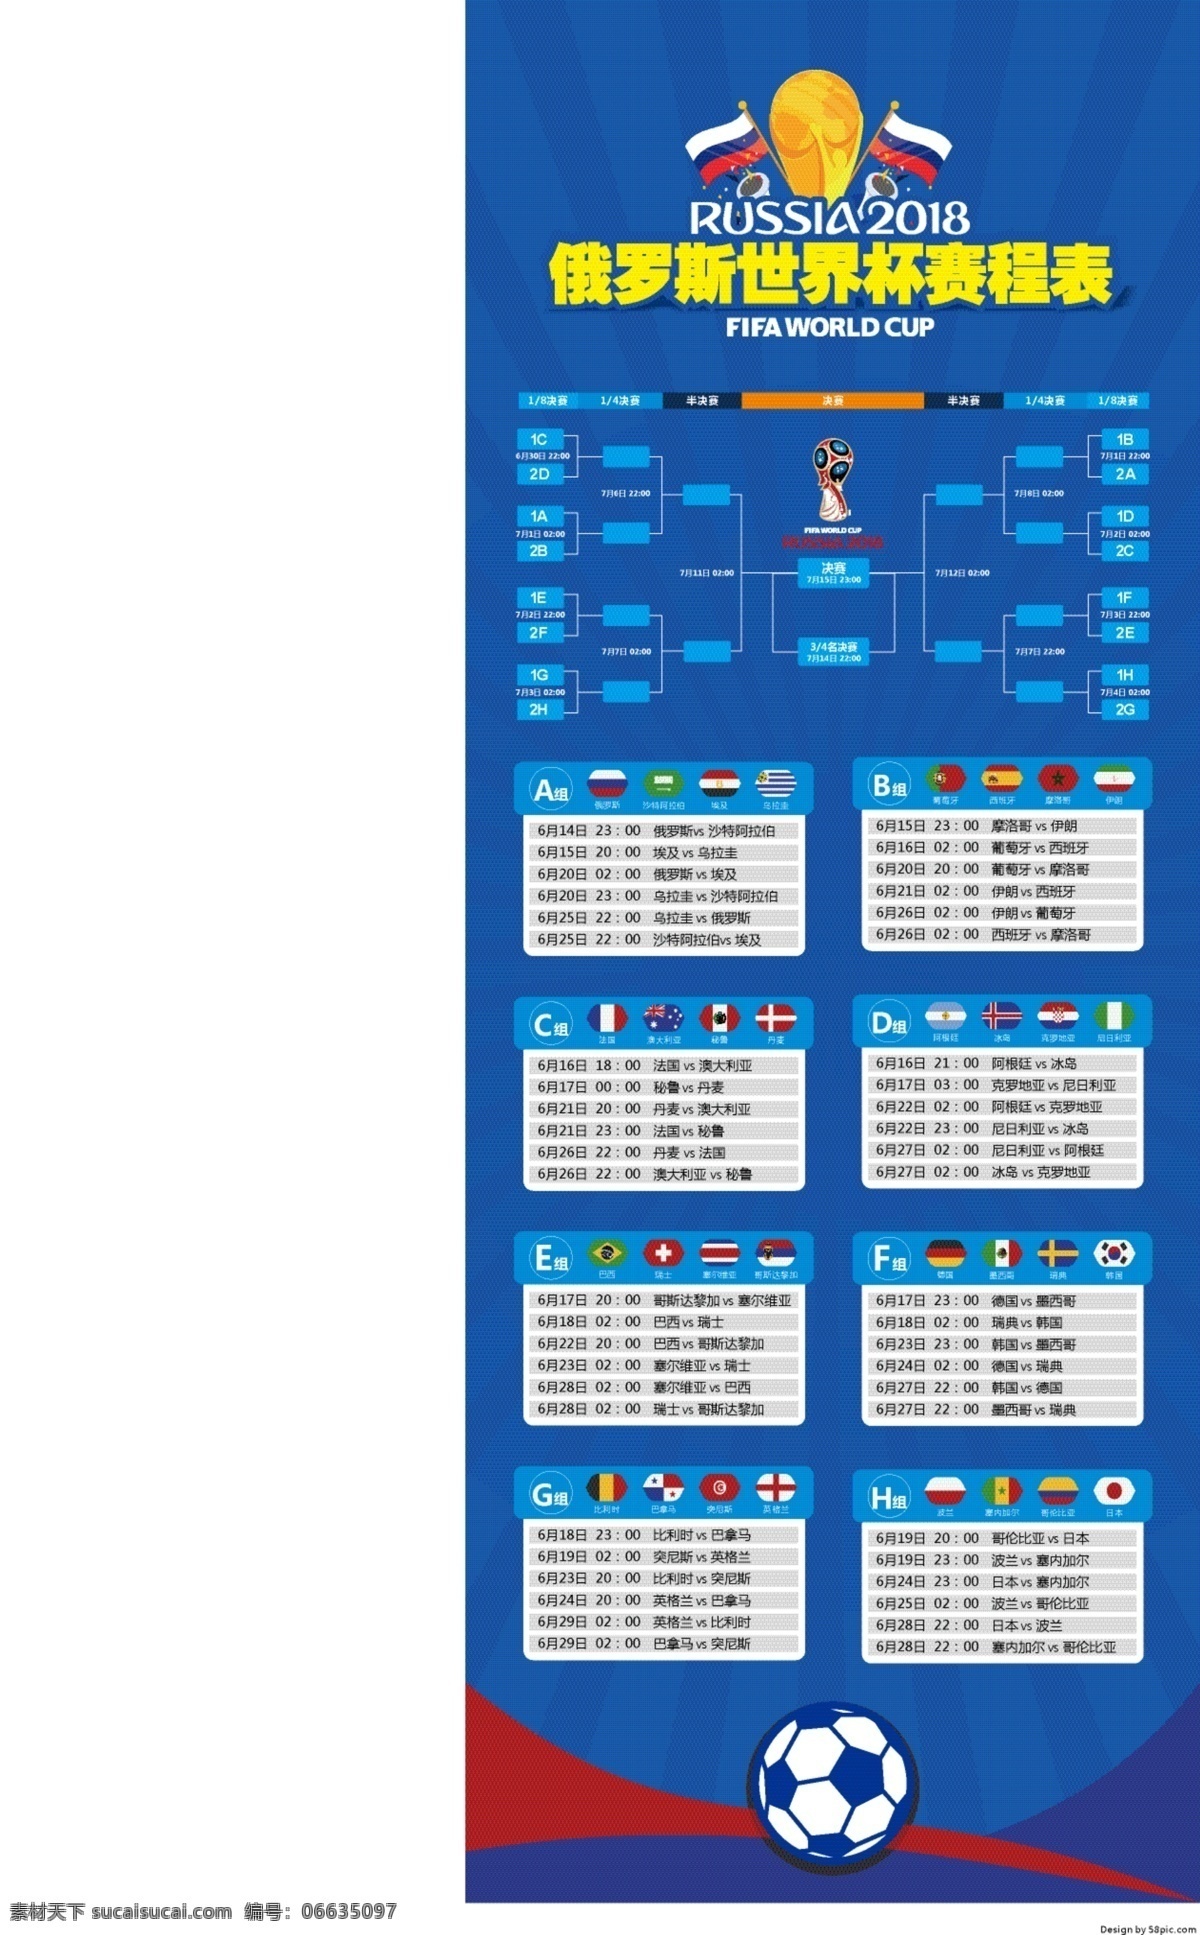 2018 世界杯 赛程表 展架 足球 足球比赛 蓝色背景 俄罗斯 球迷 世界杯赛程 赛程